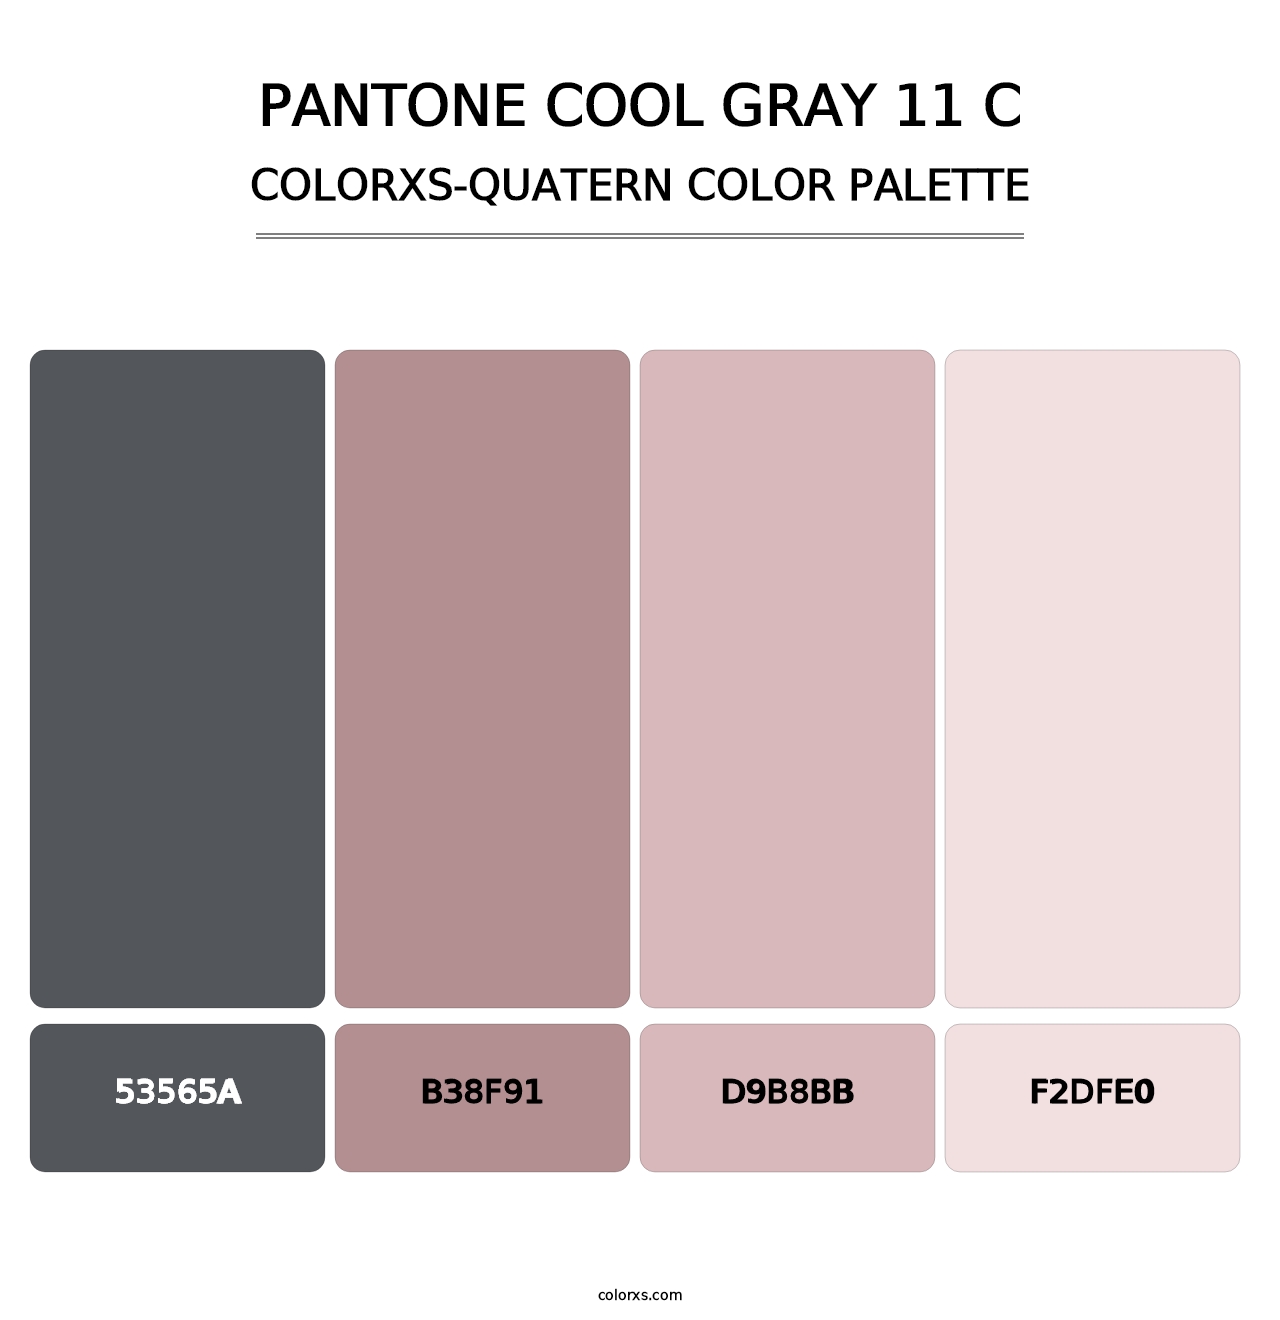 PANTONE Cool Gray 11 C - Colorxs Quatern Palette